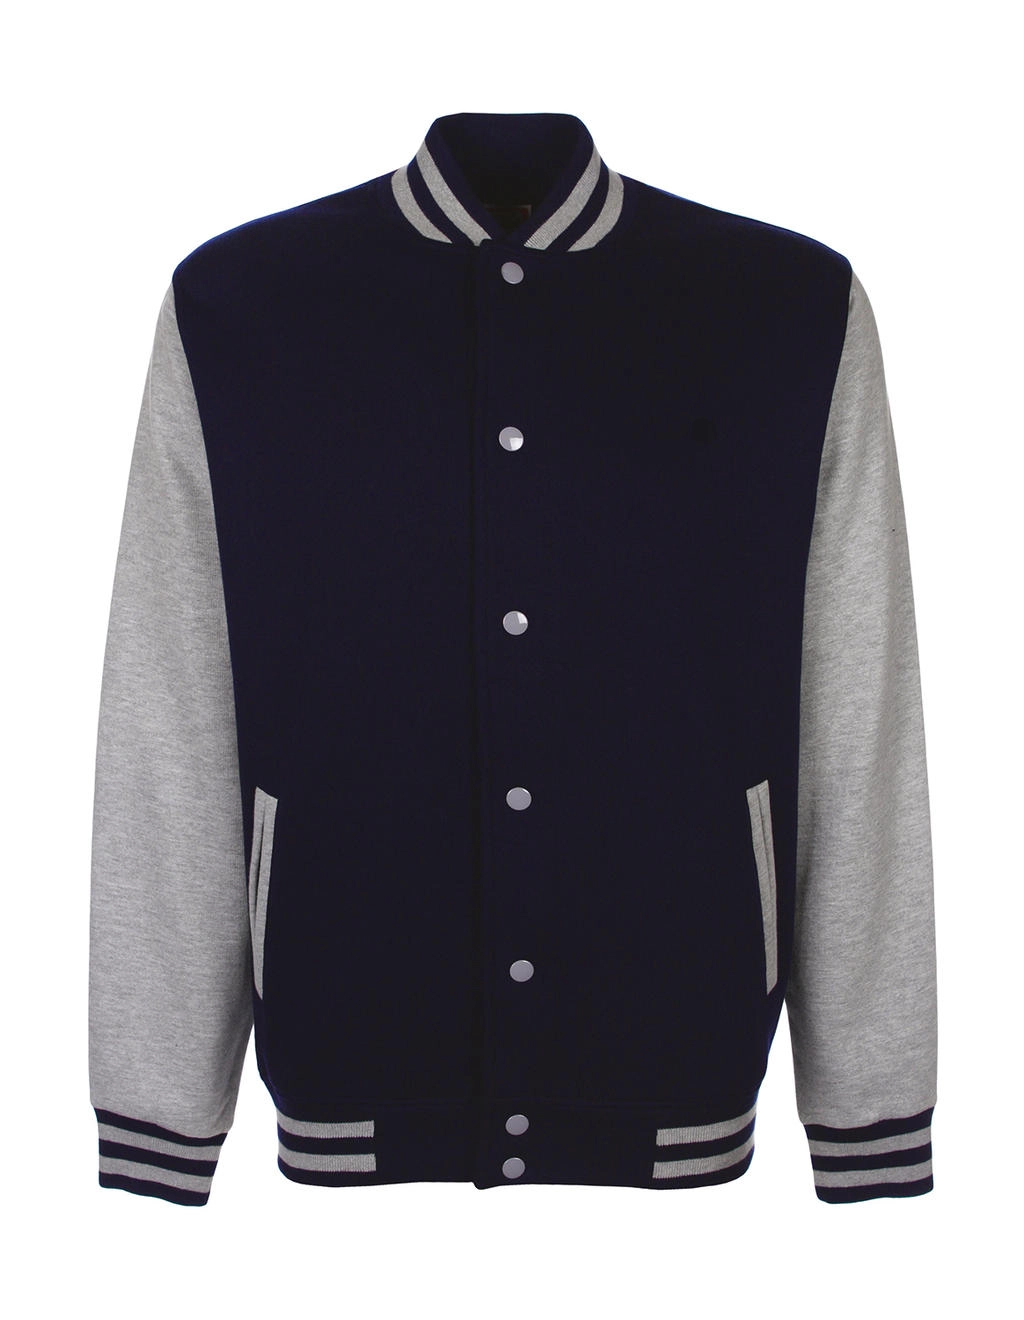 Varsity Jacket zum Besticken und Bedrucken in der Farbe Navy/Sport Grey mit Ihren Logo, Schriftzug oder Motiv.